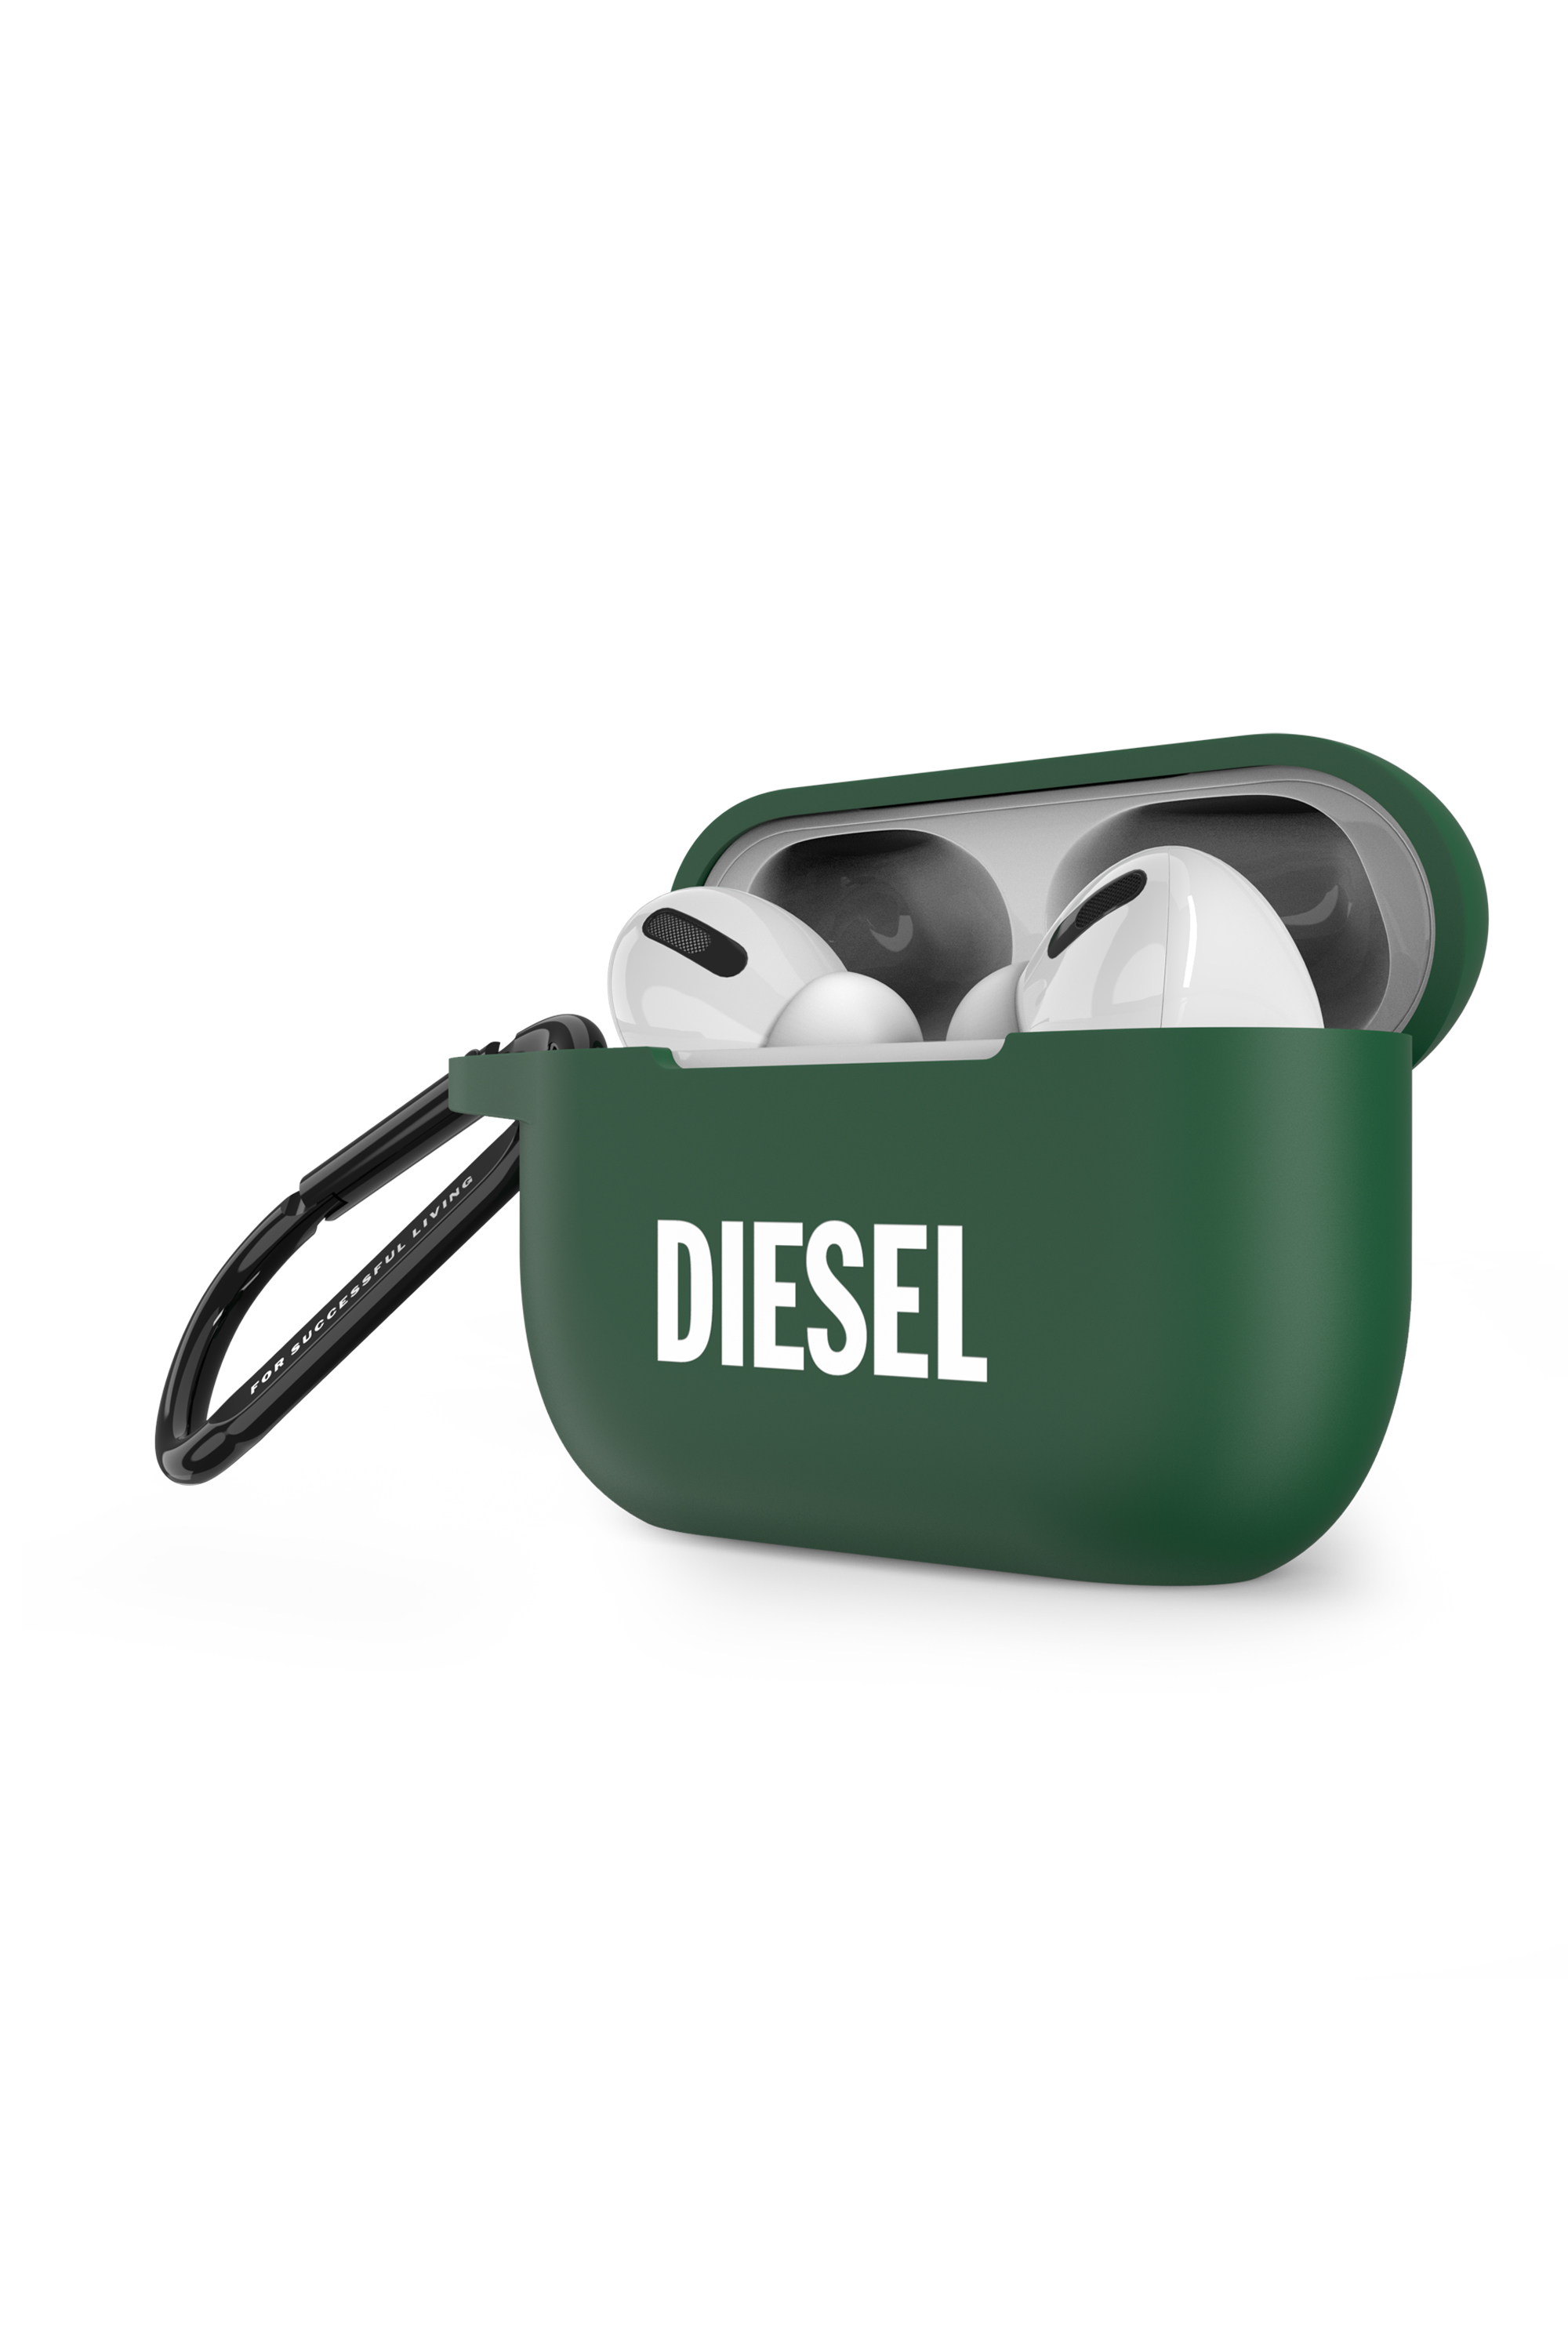 Diesel - 49671 MOULDED CASE, Verde - Image 3